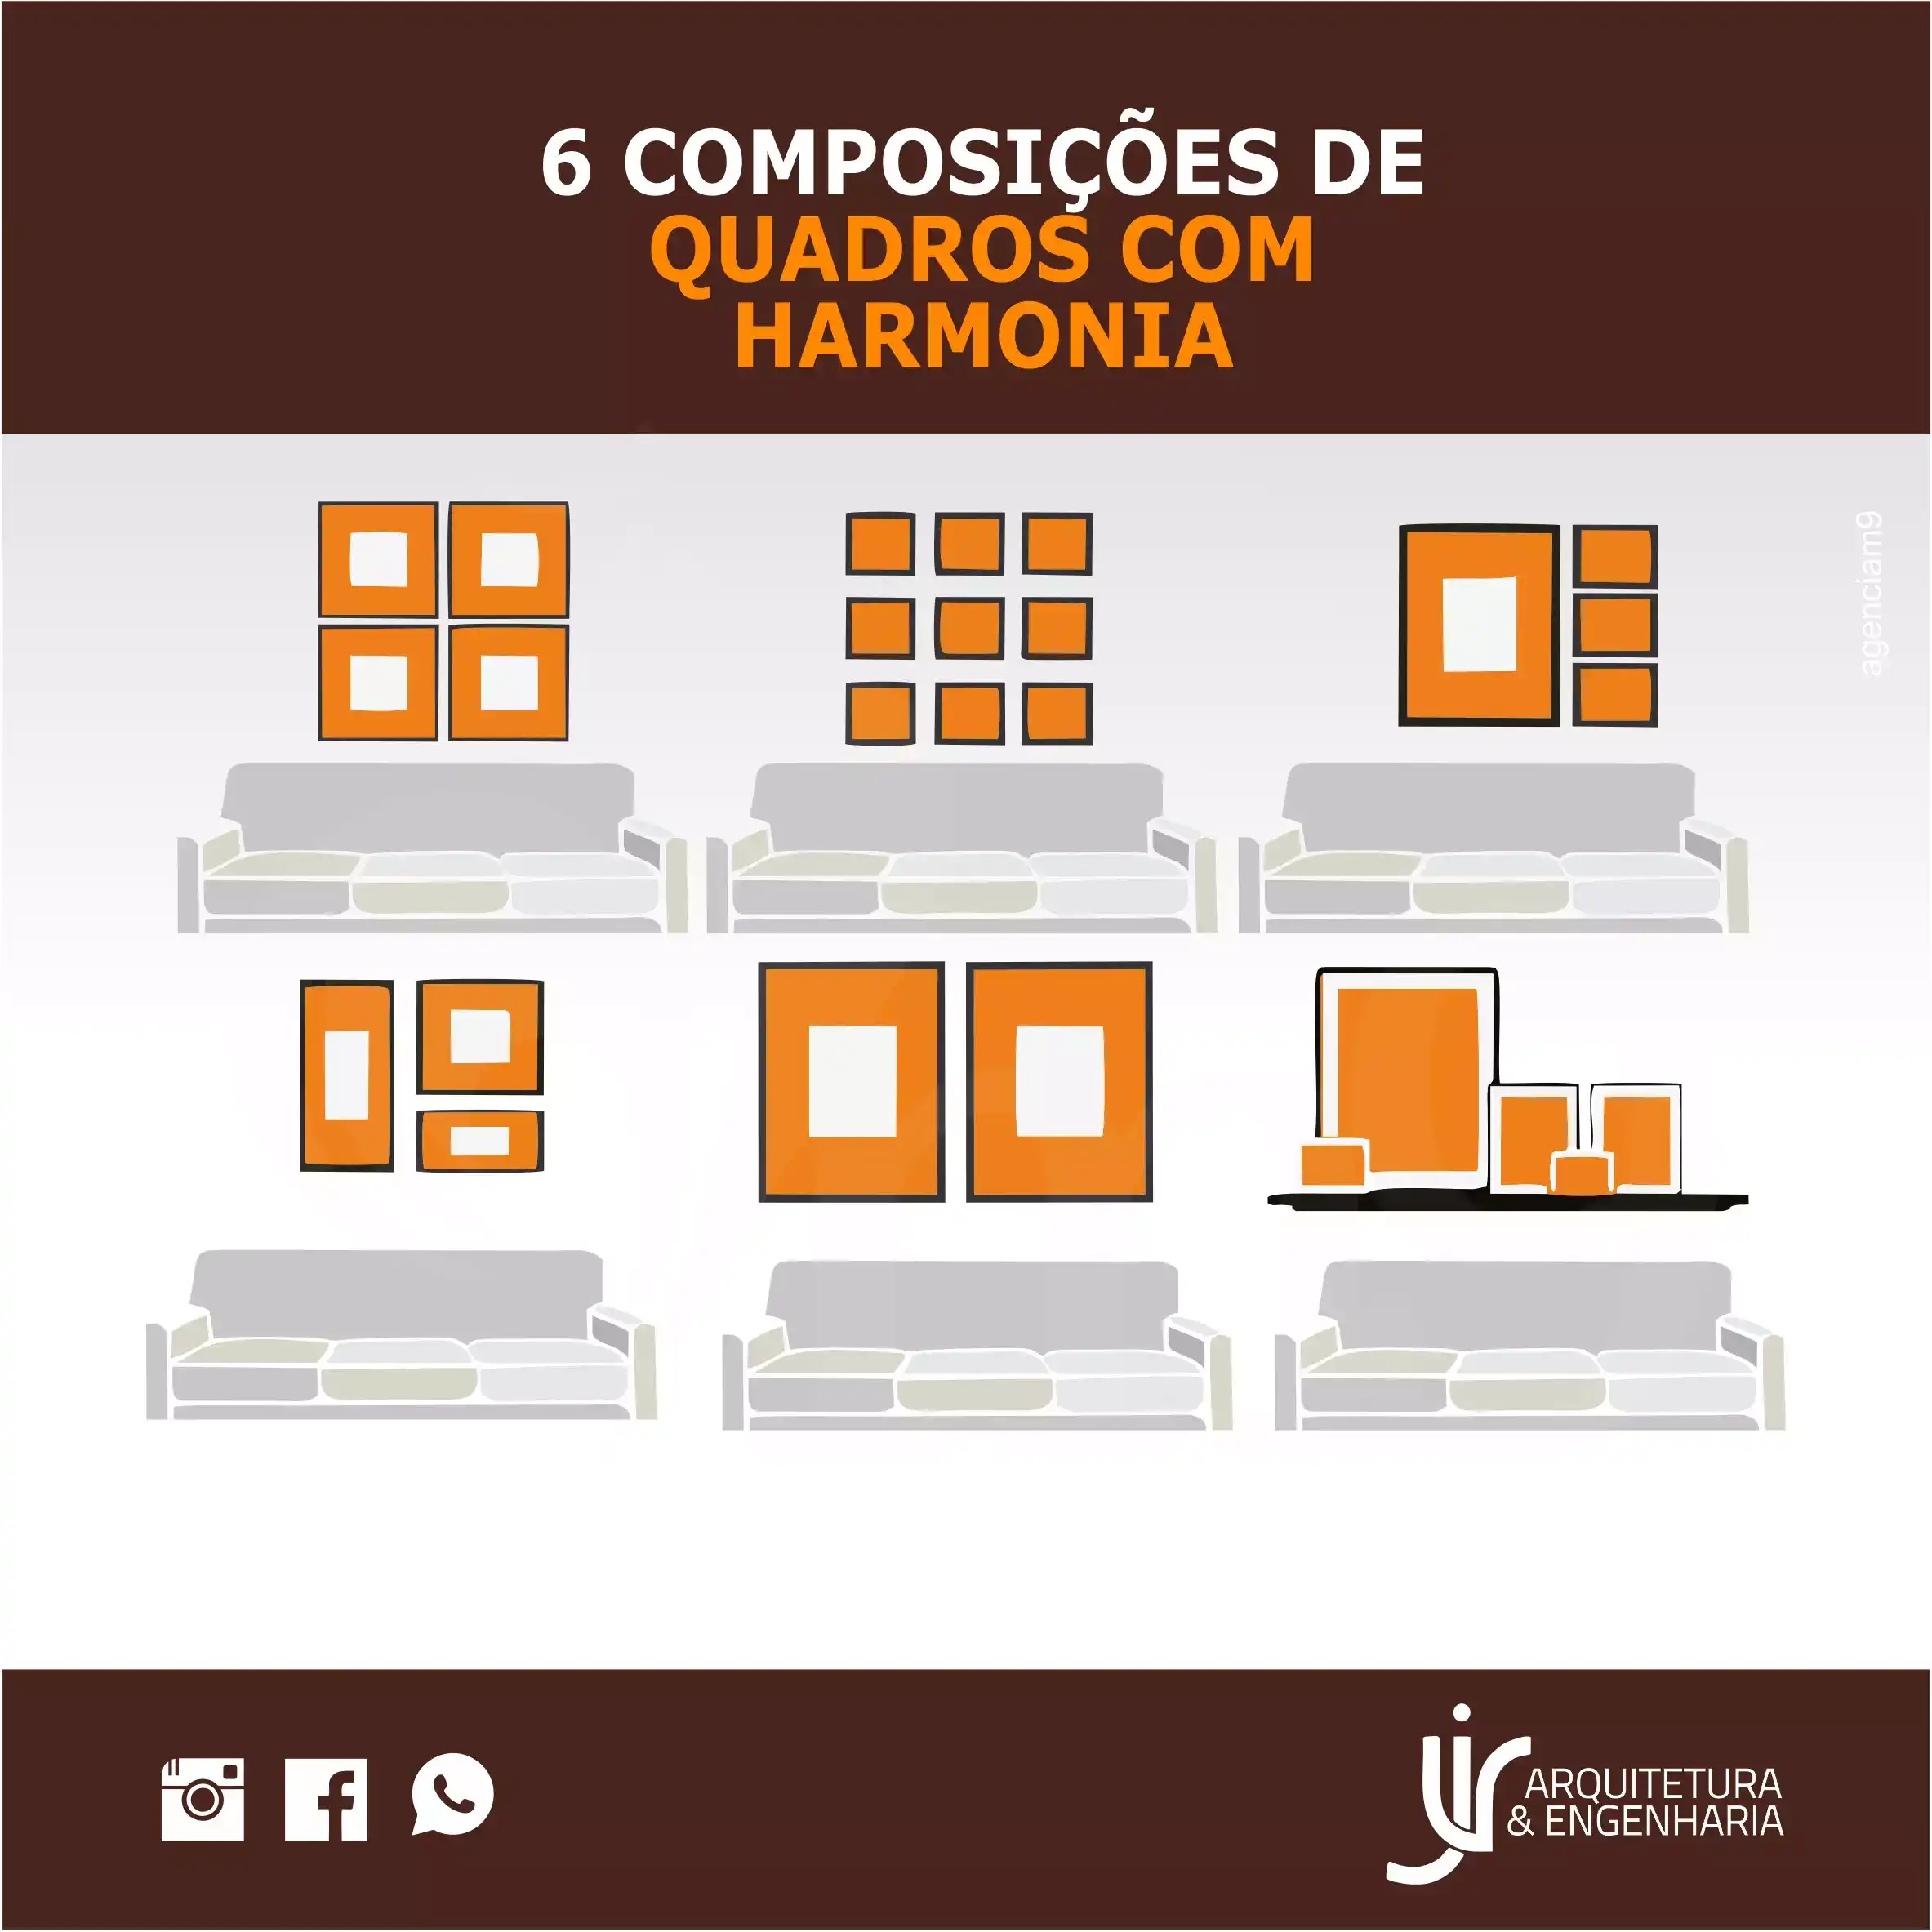 
Propaganda Composição de Quadros em Harmonia Design Interiores



